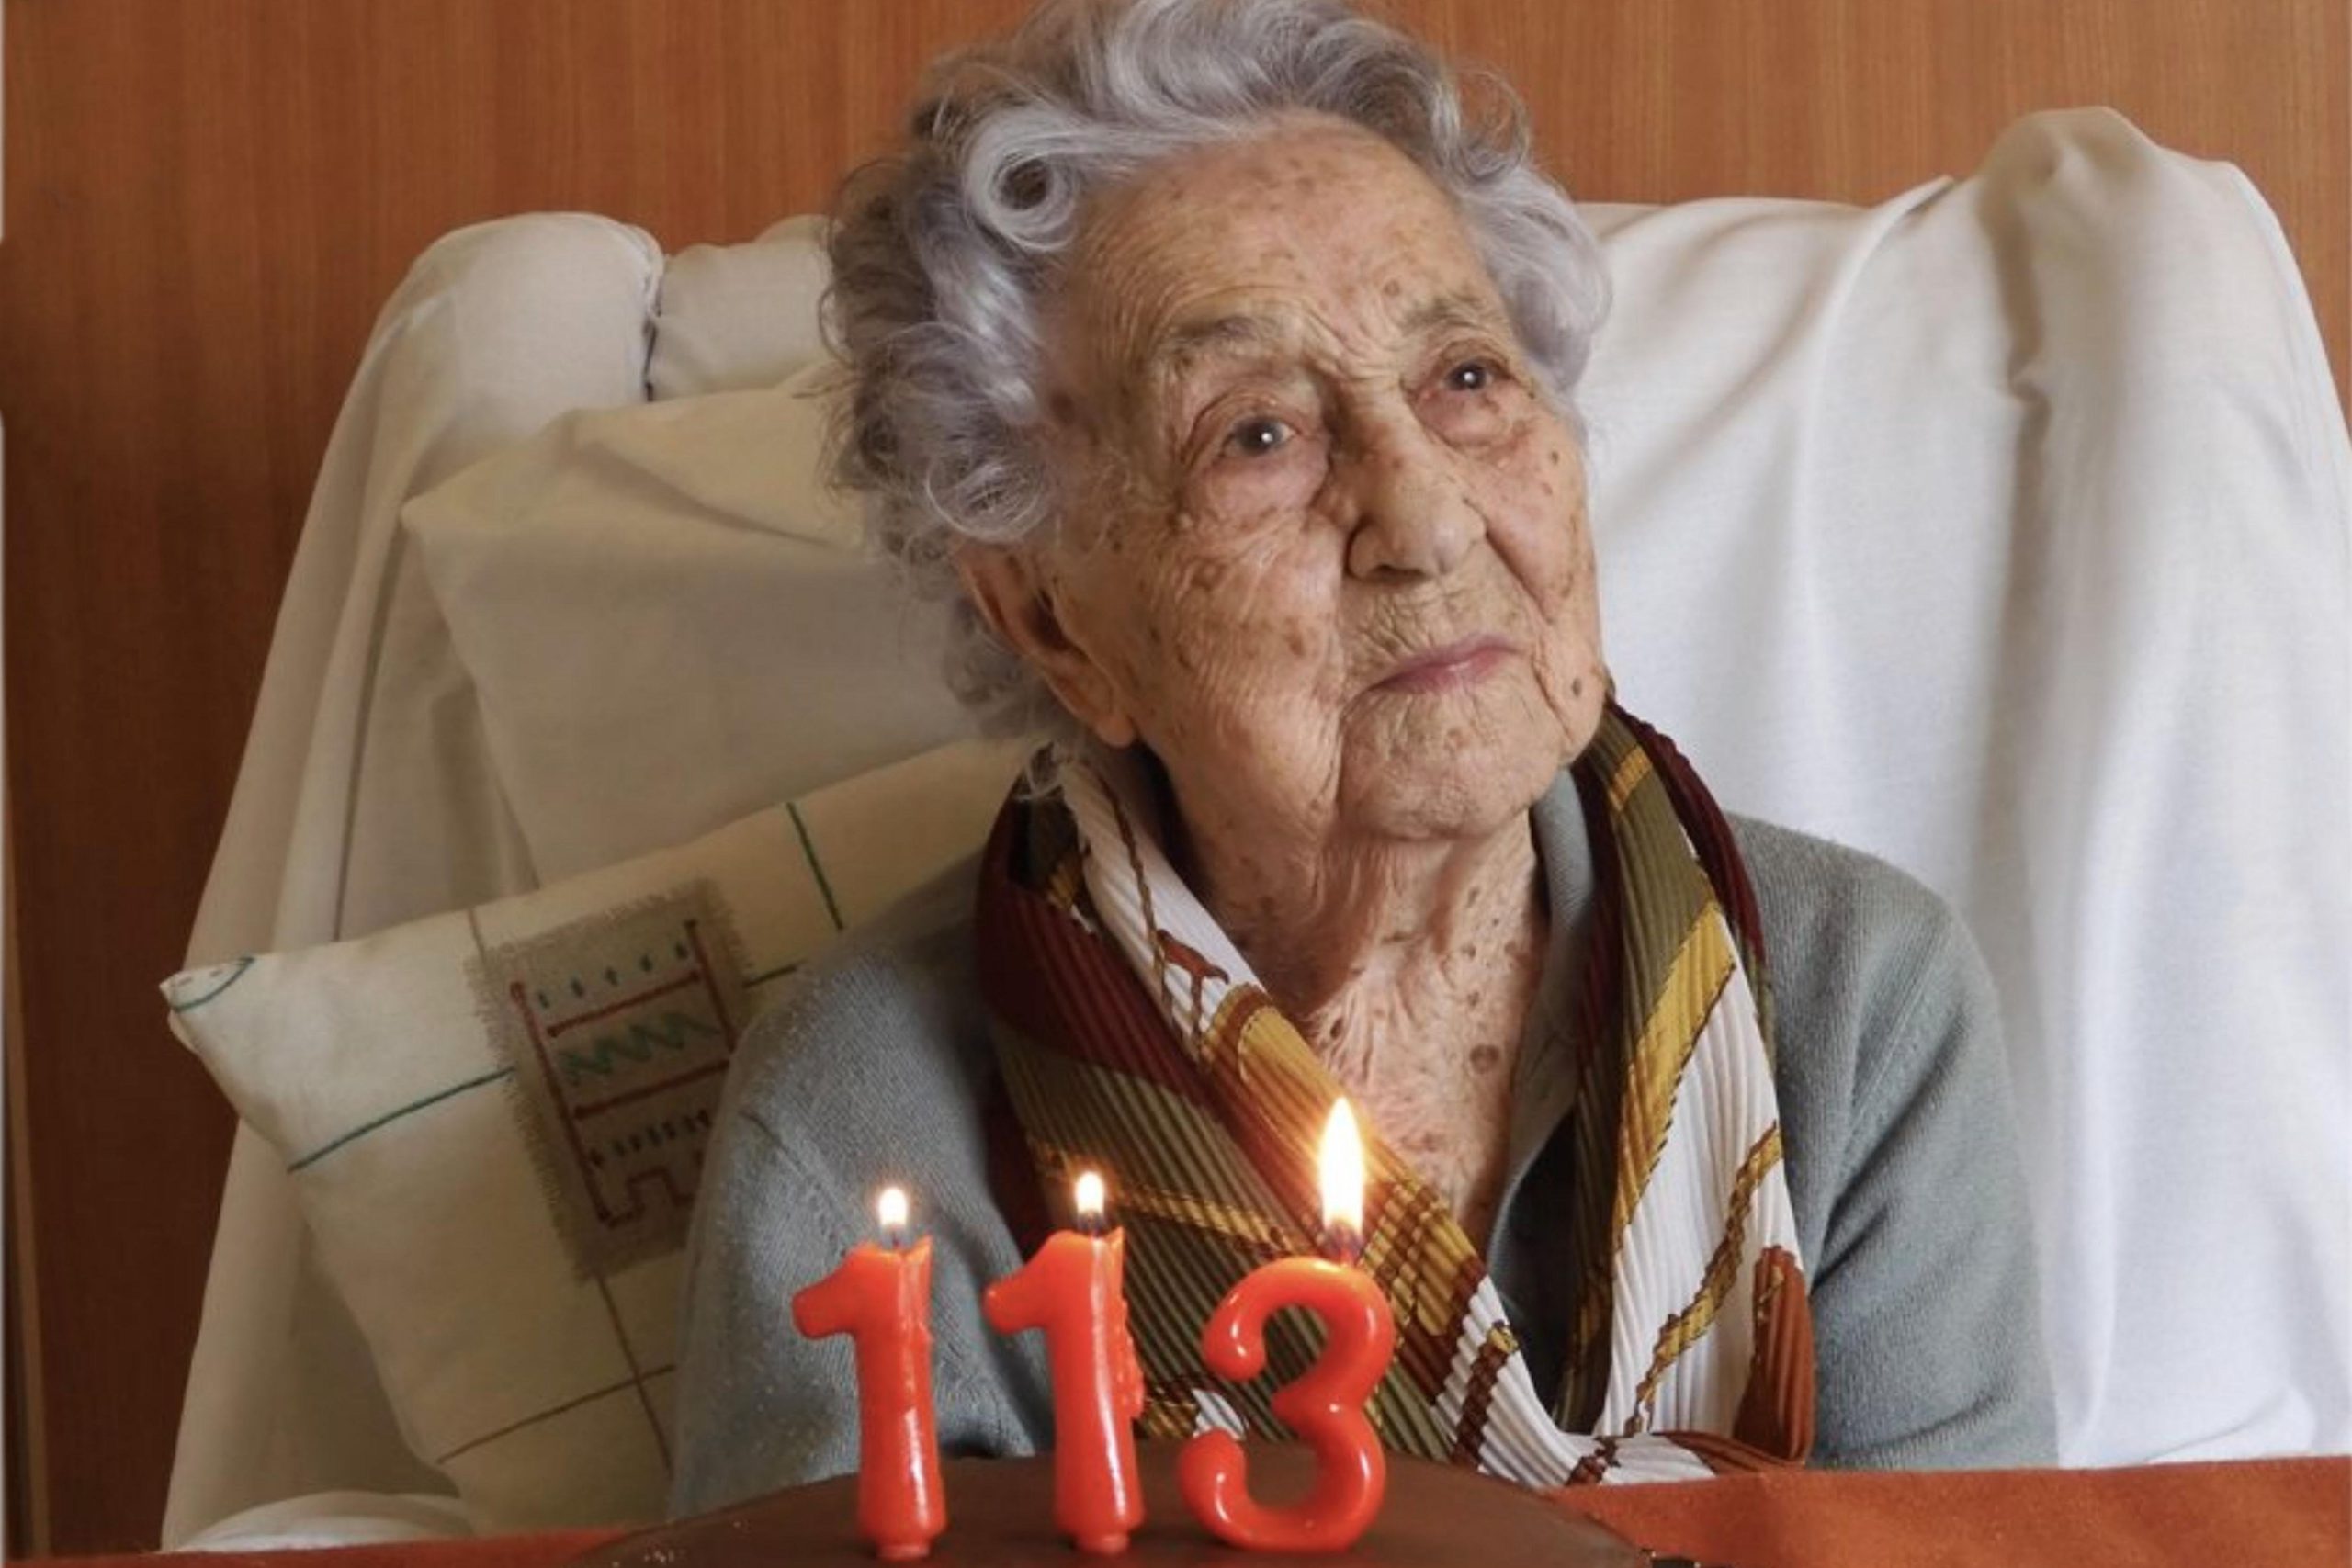  Cea mai bătrână persoană din lume, studiată, pentru a descoperi secretul unei vieţi îndelungate